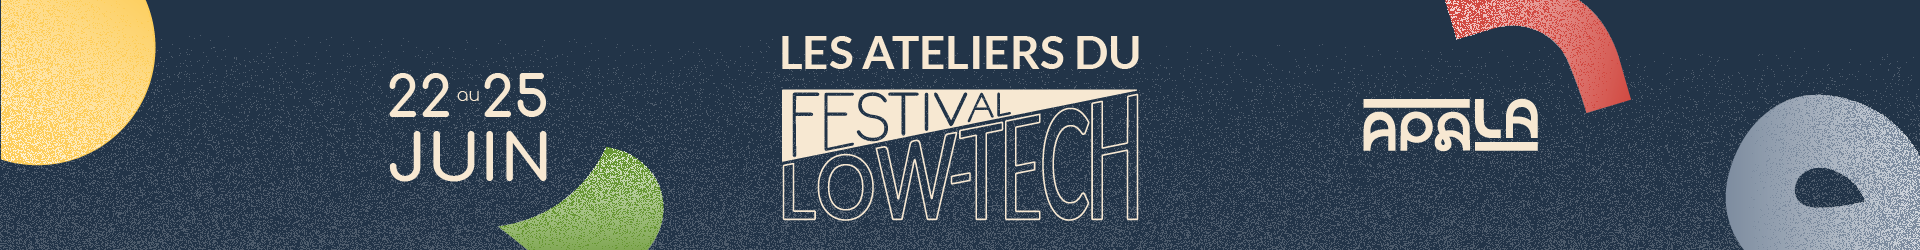 Les ateliers du festival low-tech au delà du concept du 22 au 254 juin à Nantes